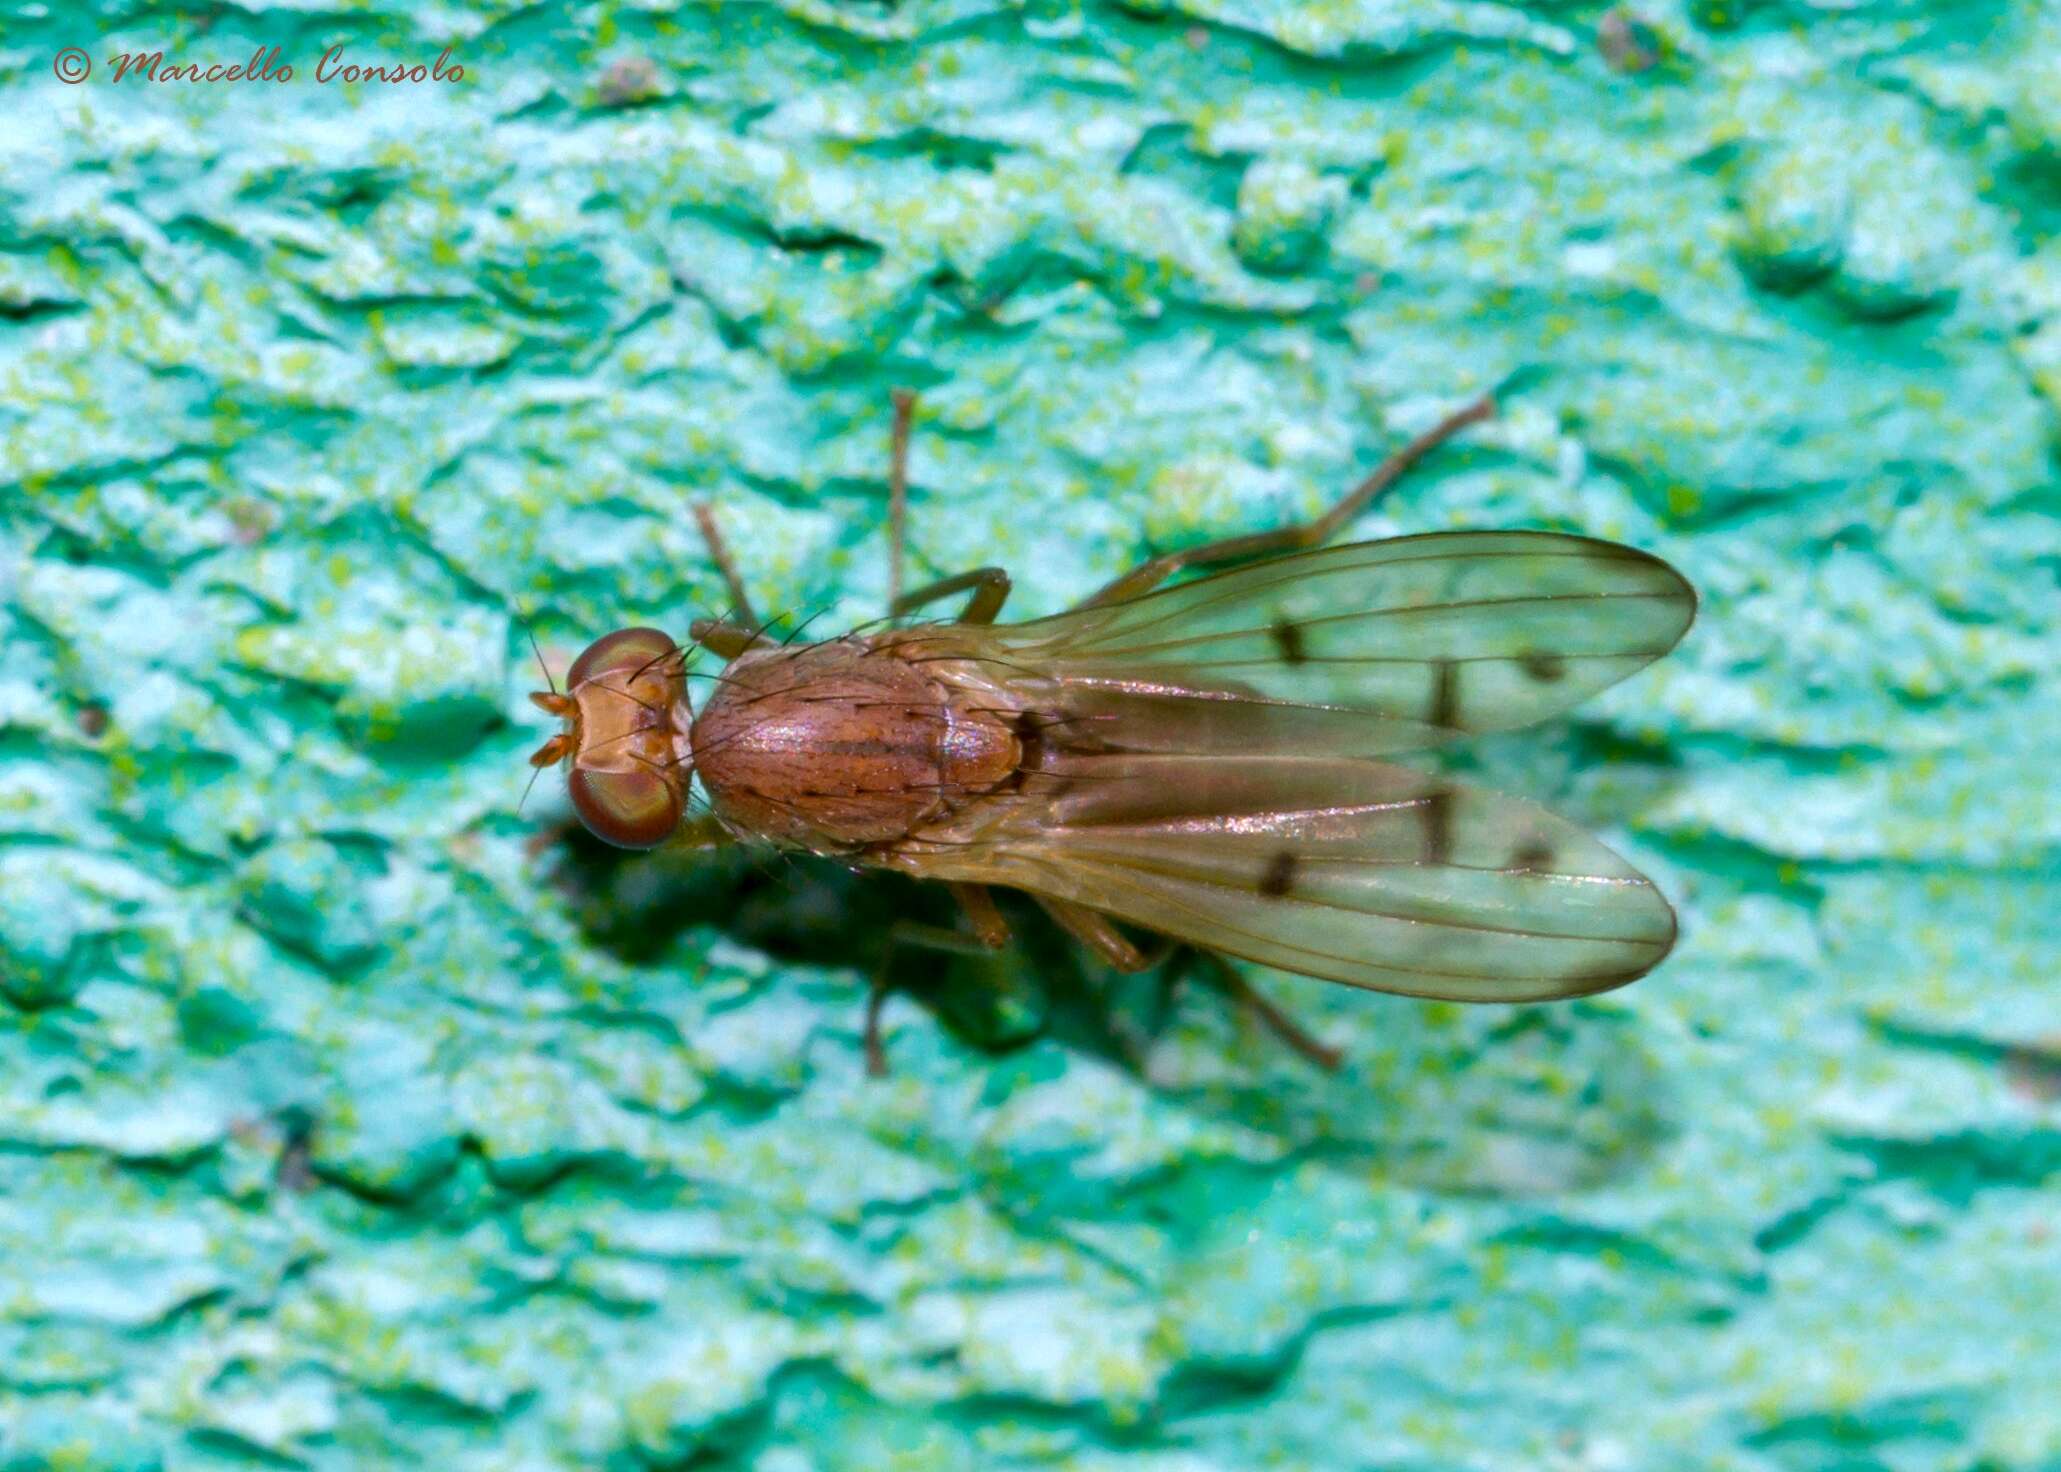 Image of Opomyzidae